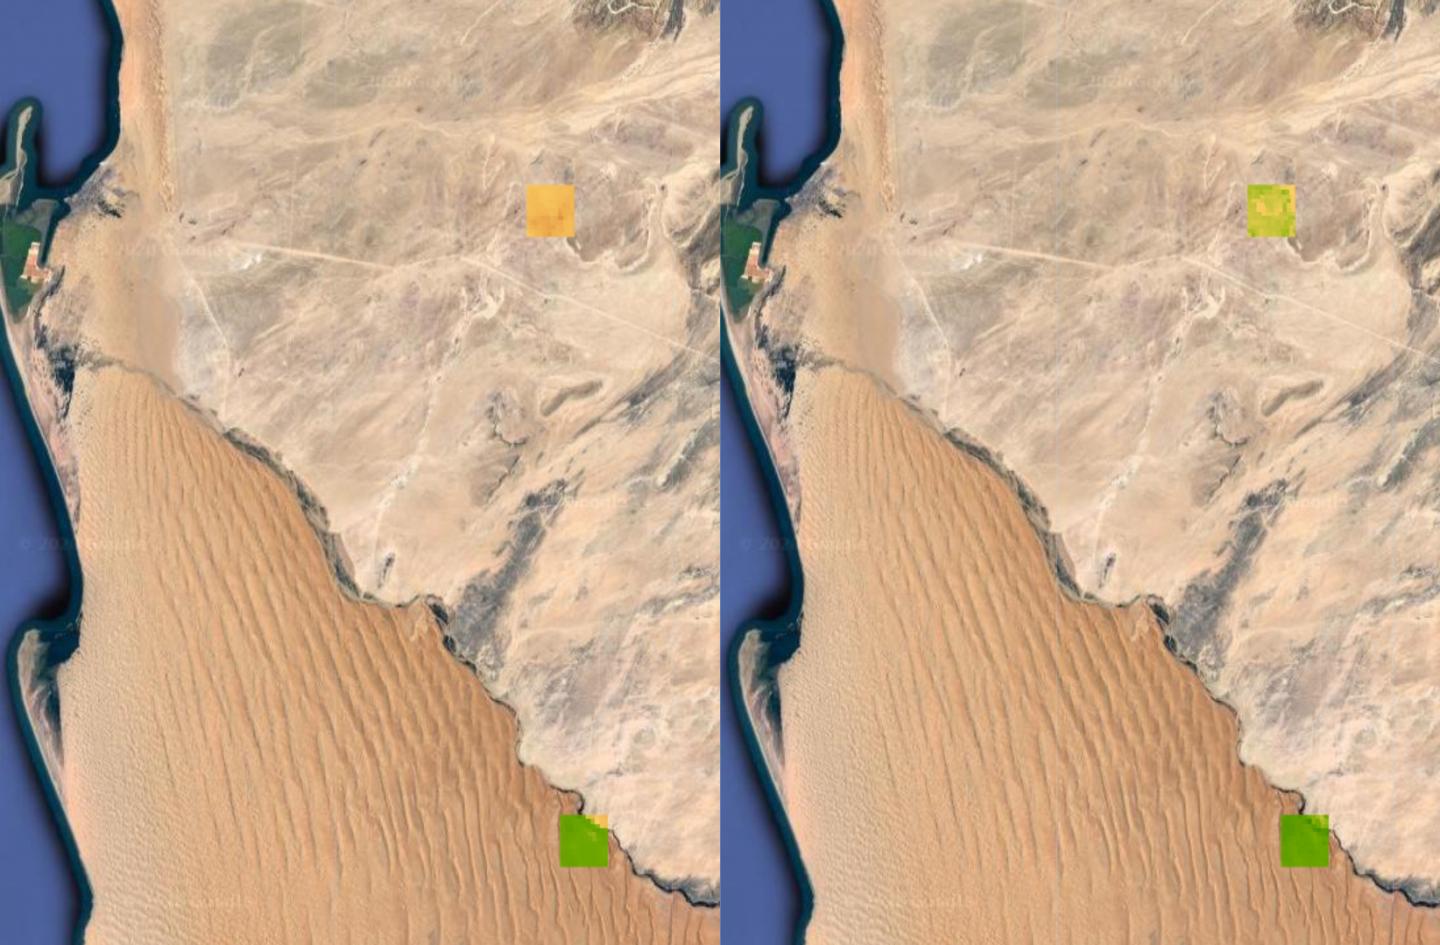 Satellite Images of Fog-Related Vegetation Changes in the Namib Desert